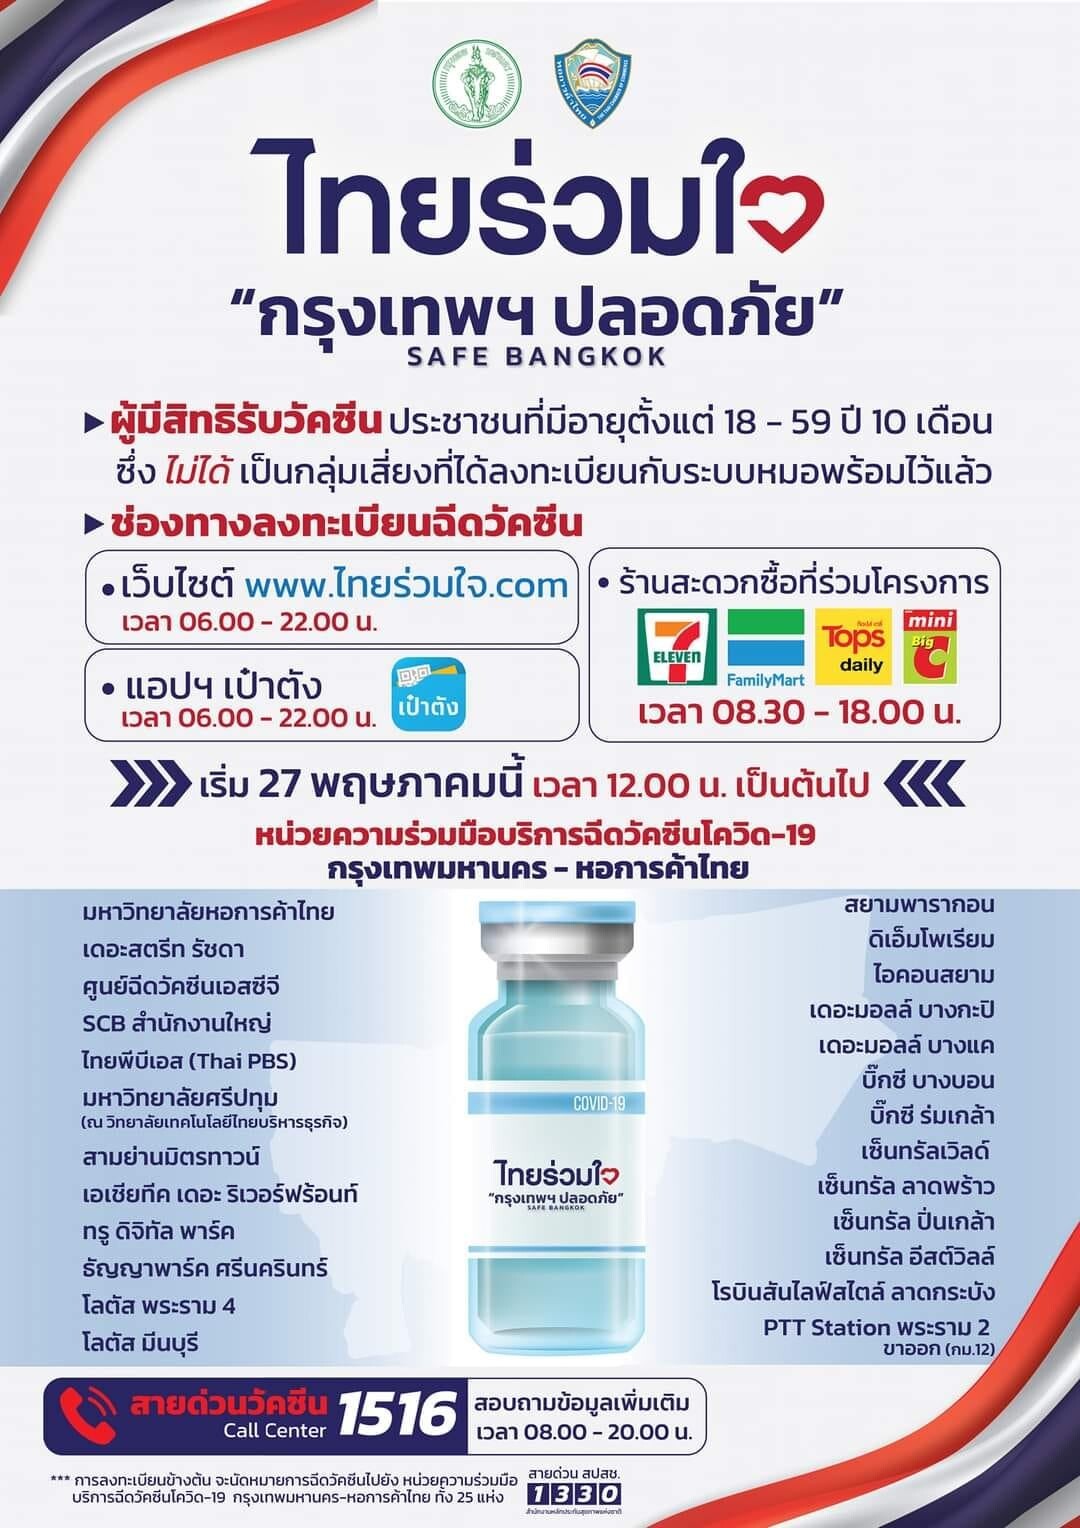 มหาวิทยาลัยหอการค้าไทยขอเป็นส่วนหนึ่งในการเป็น "ศูนย์ฉีดวัคซีนสนาม"